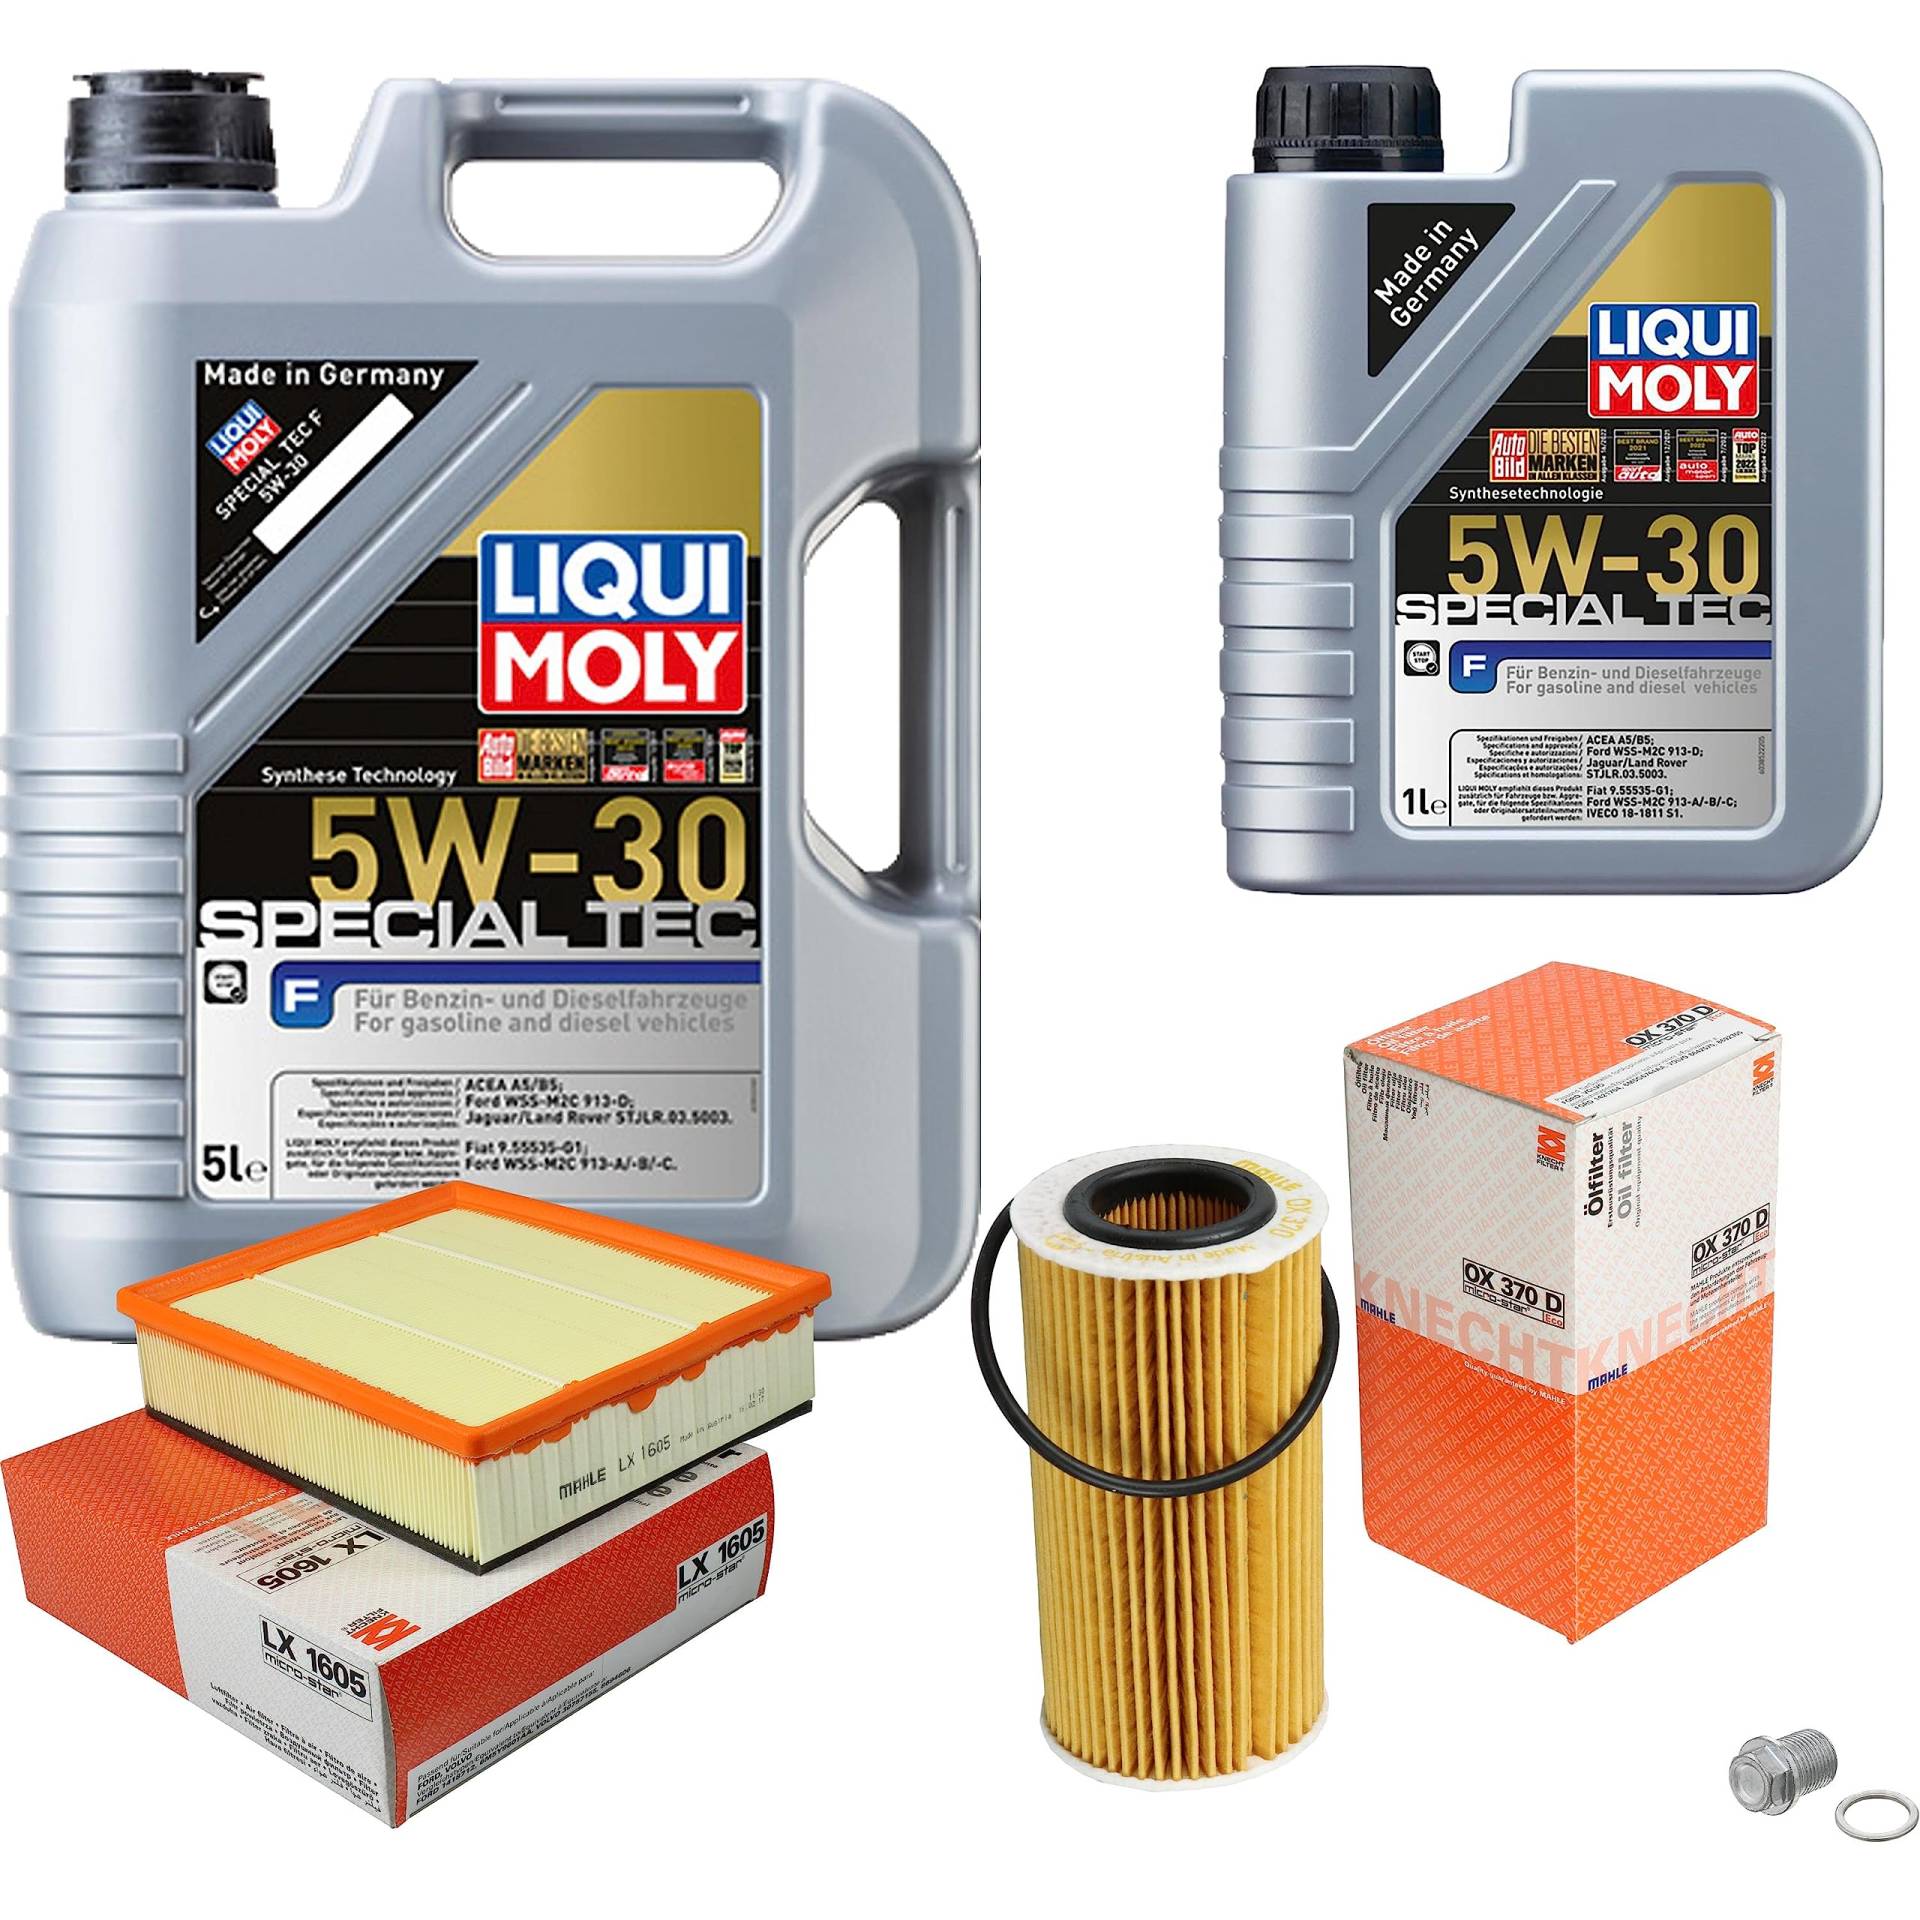 Inspektionspaket Wartungspaket Filterset mit 6 L Motoröl Special Tec F 5W-30, Ölfilter, Luftfilter, Verschlussschraube von EISENFELS